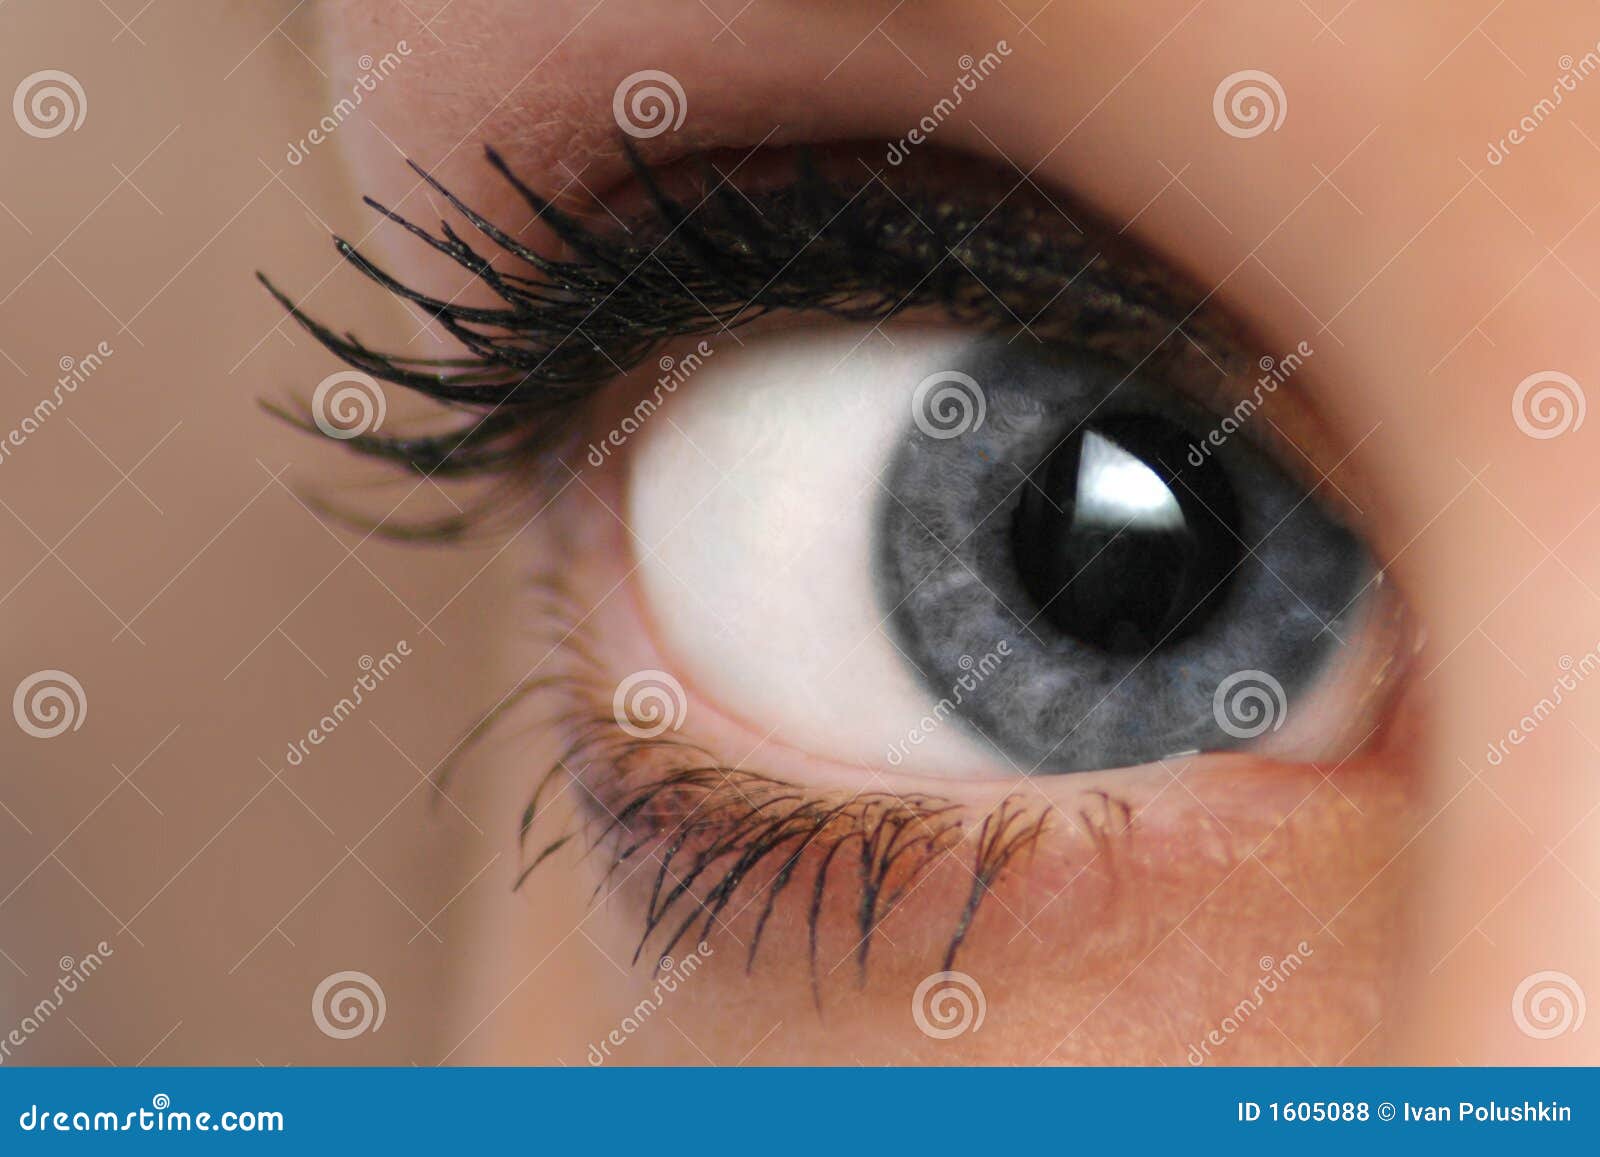 woman eye mascara